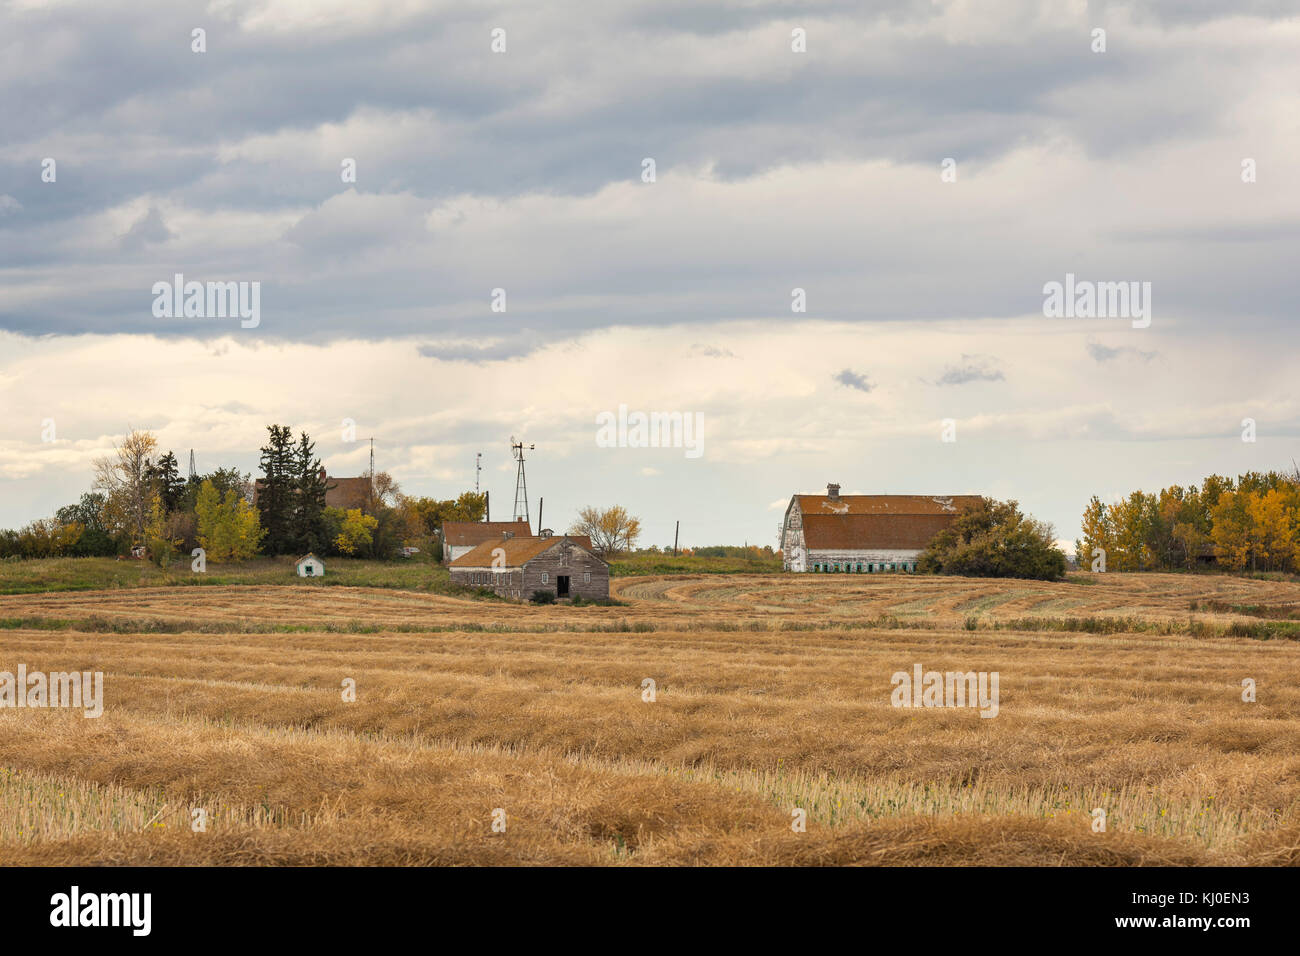 Old farm on the Prairies Stock Photo